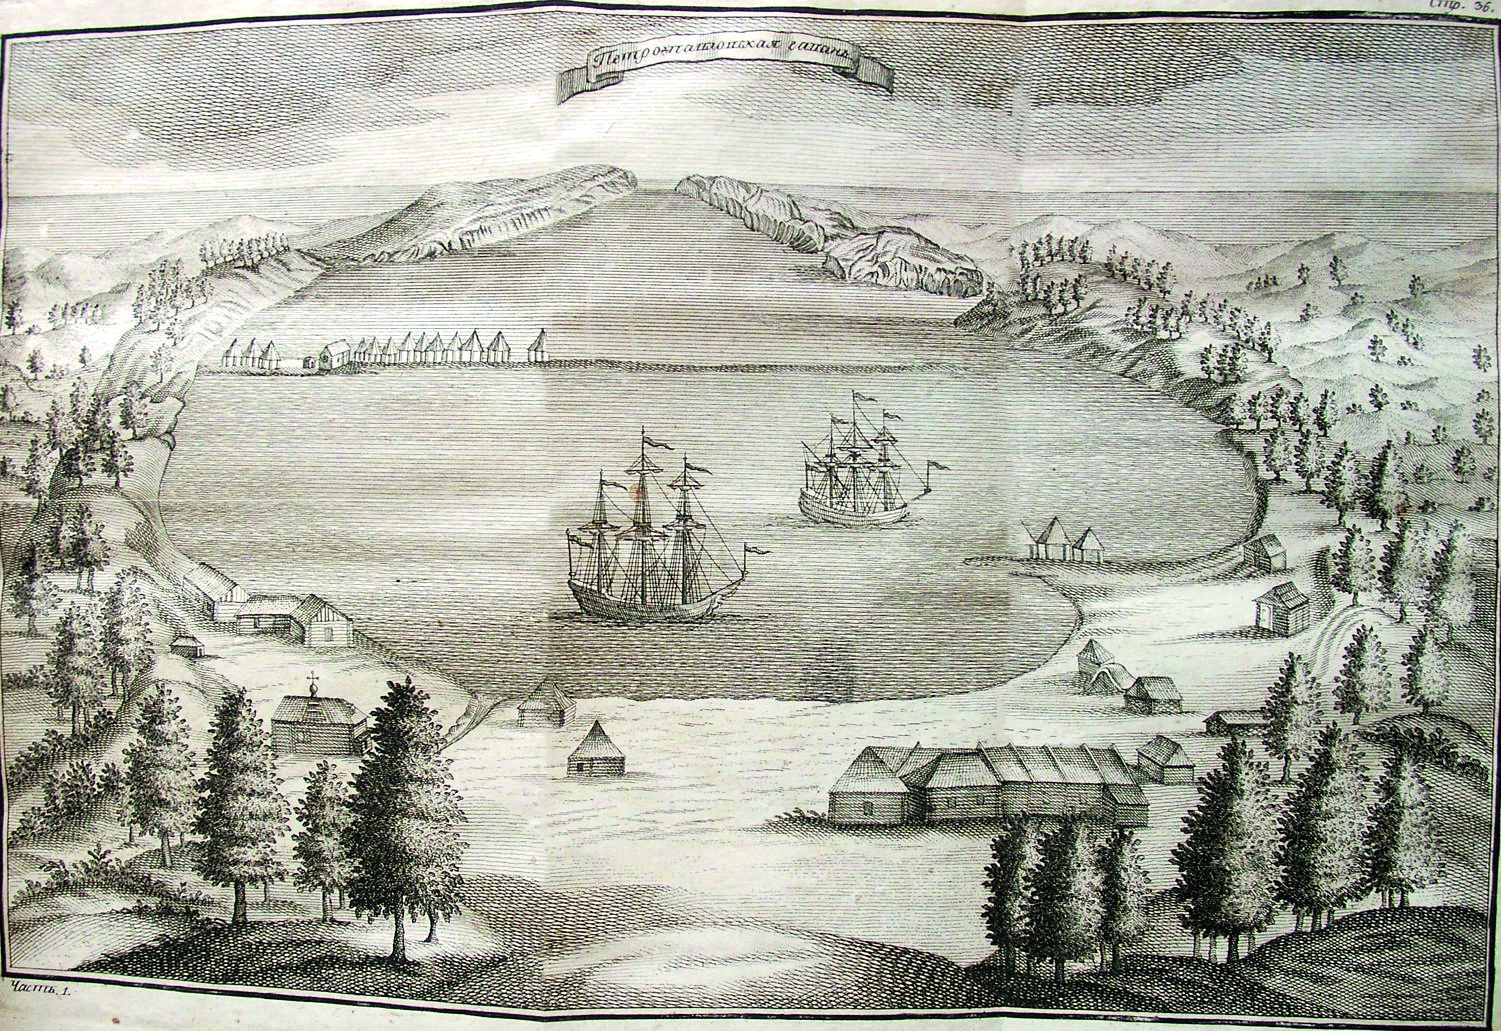 петропавловск-камчатский гравюра 18 века.jpg